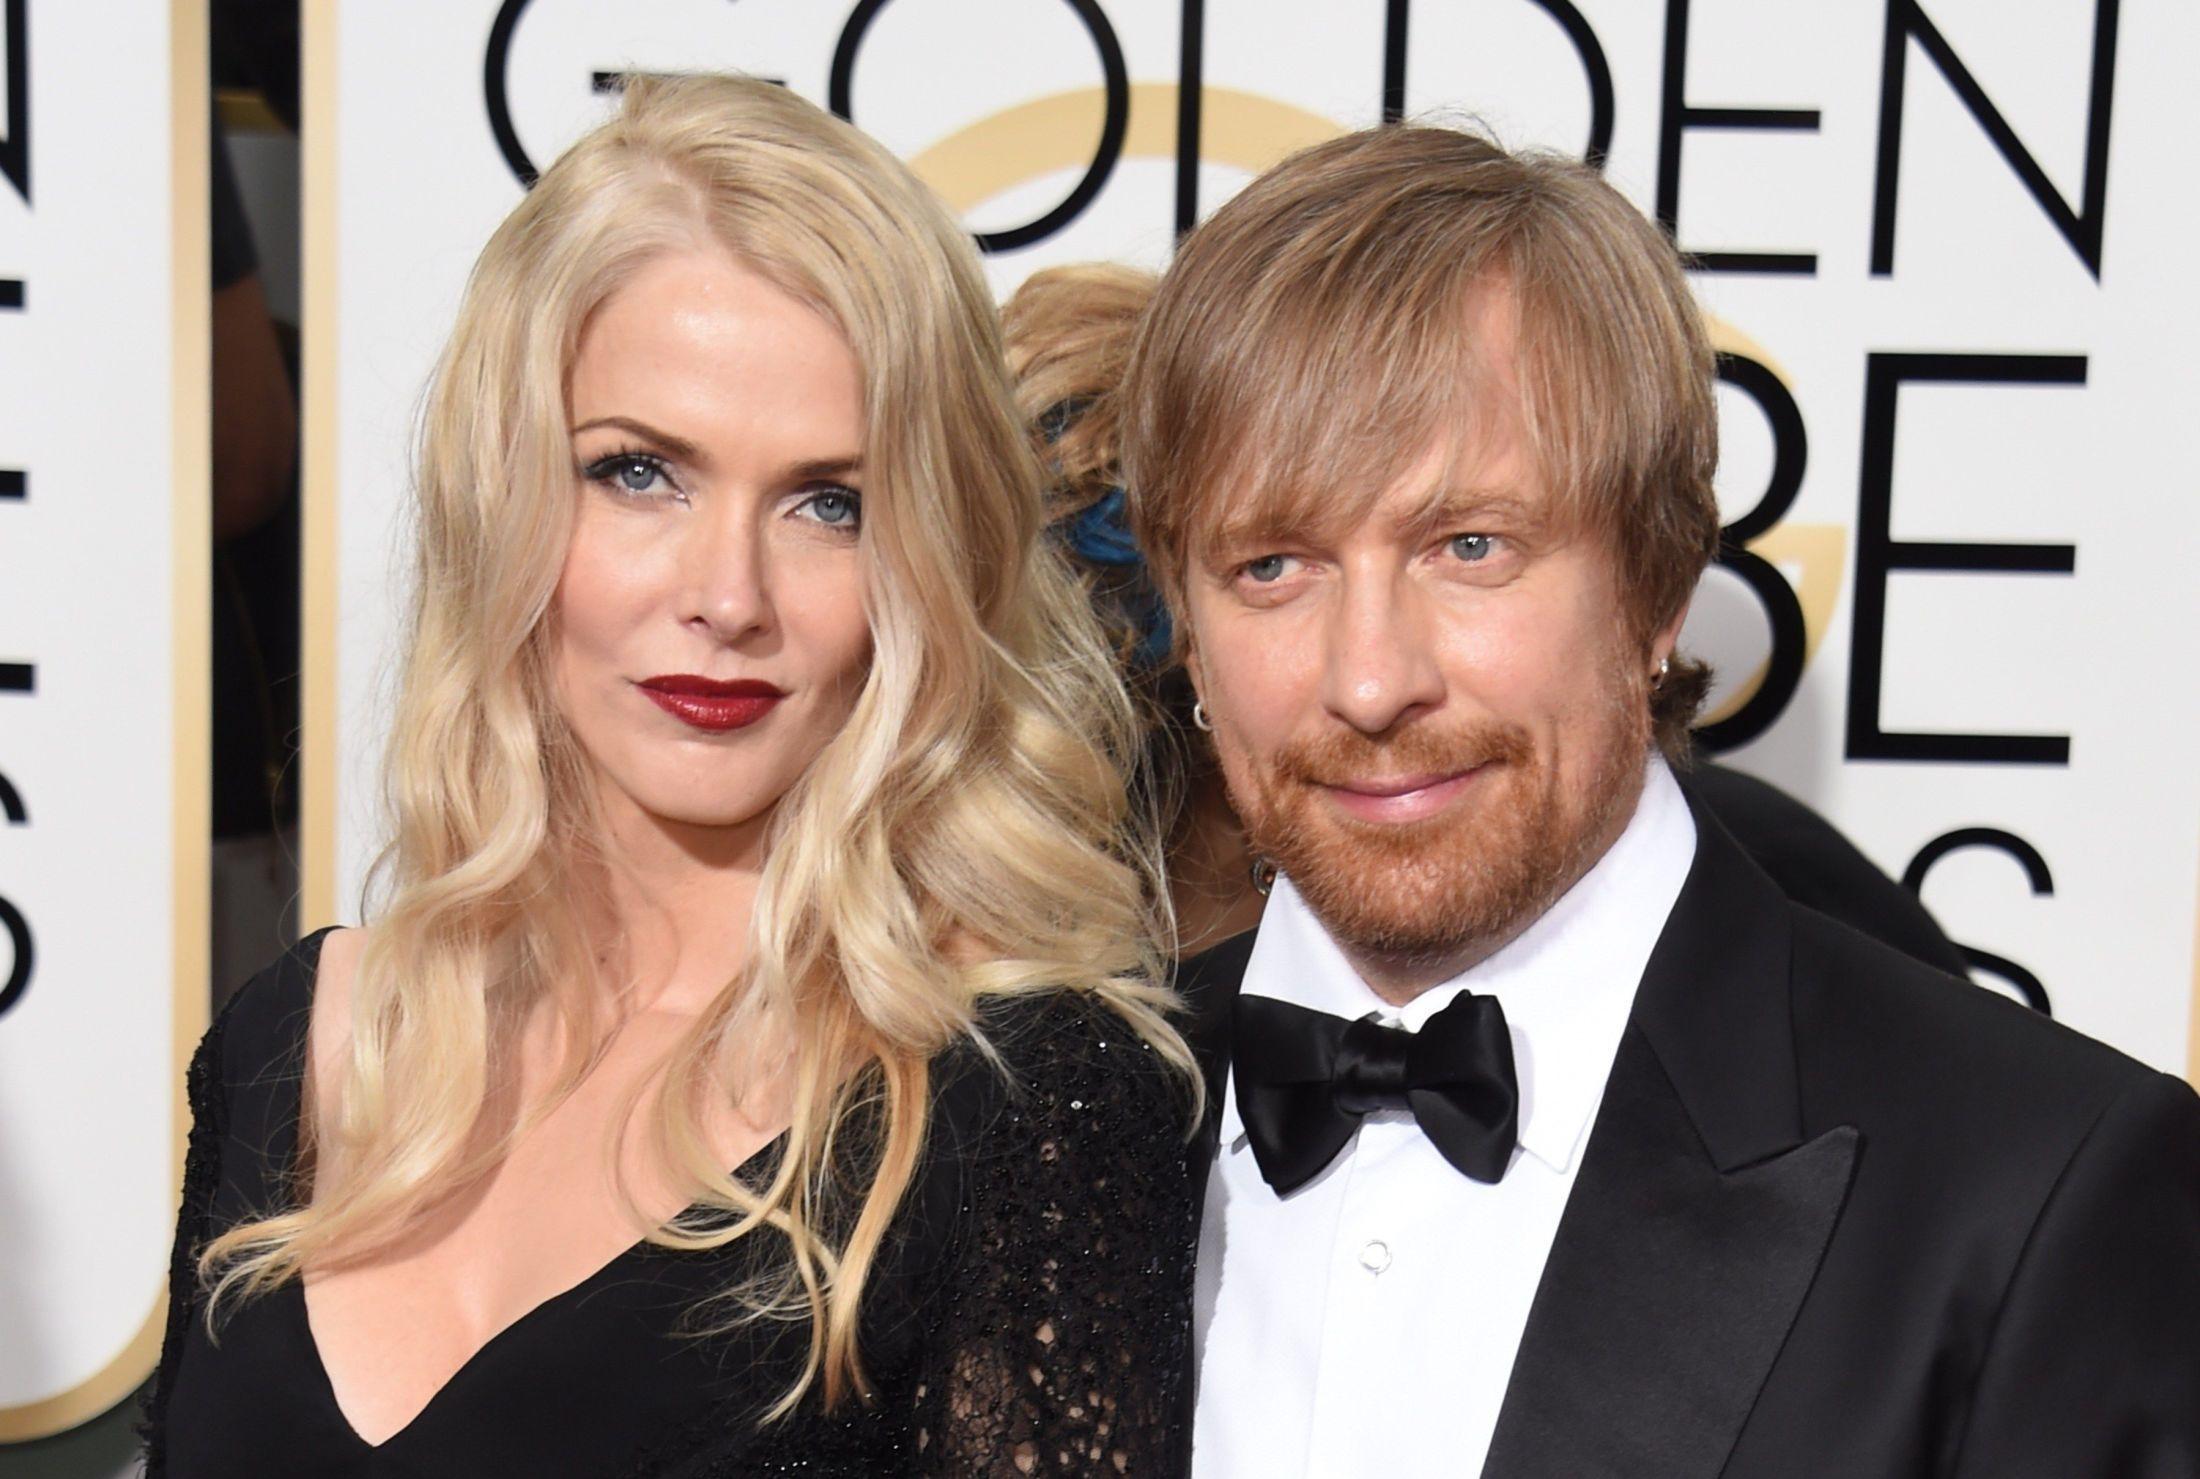 RØD LØPER: 22. februar skal Janne Tyldum og ektemannen Morten Tyldum på Oscar-utdelingen i Los Angeles. Her er paret på rød løper i forbindelse med Golden Globe-utdelingen i januar.